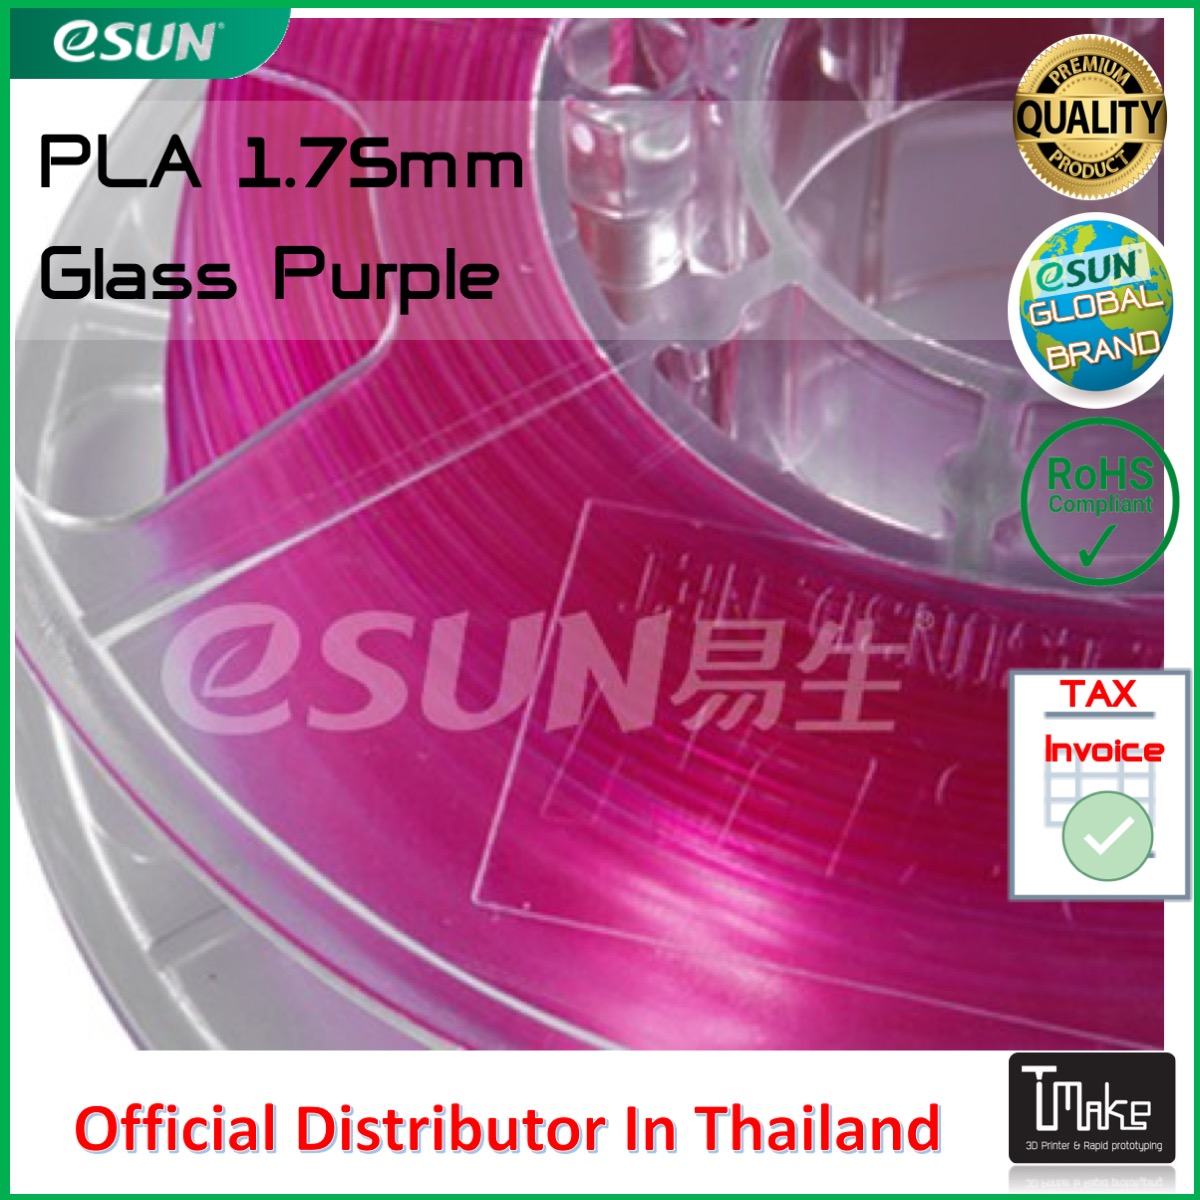 eSUN Filament PLA Glass Purple 1.75mm for 3D Printer